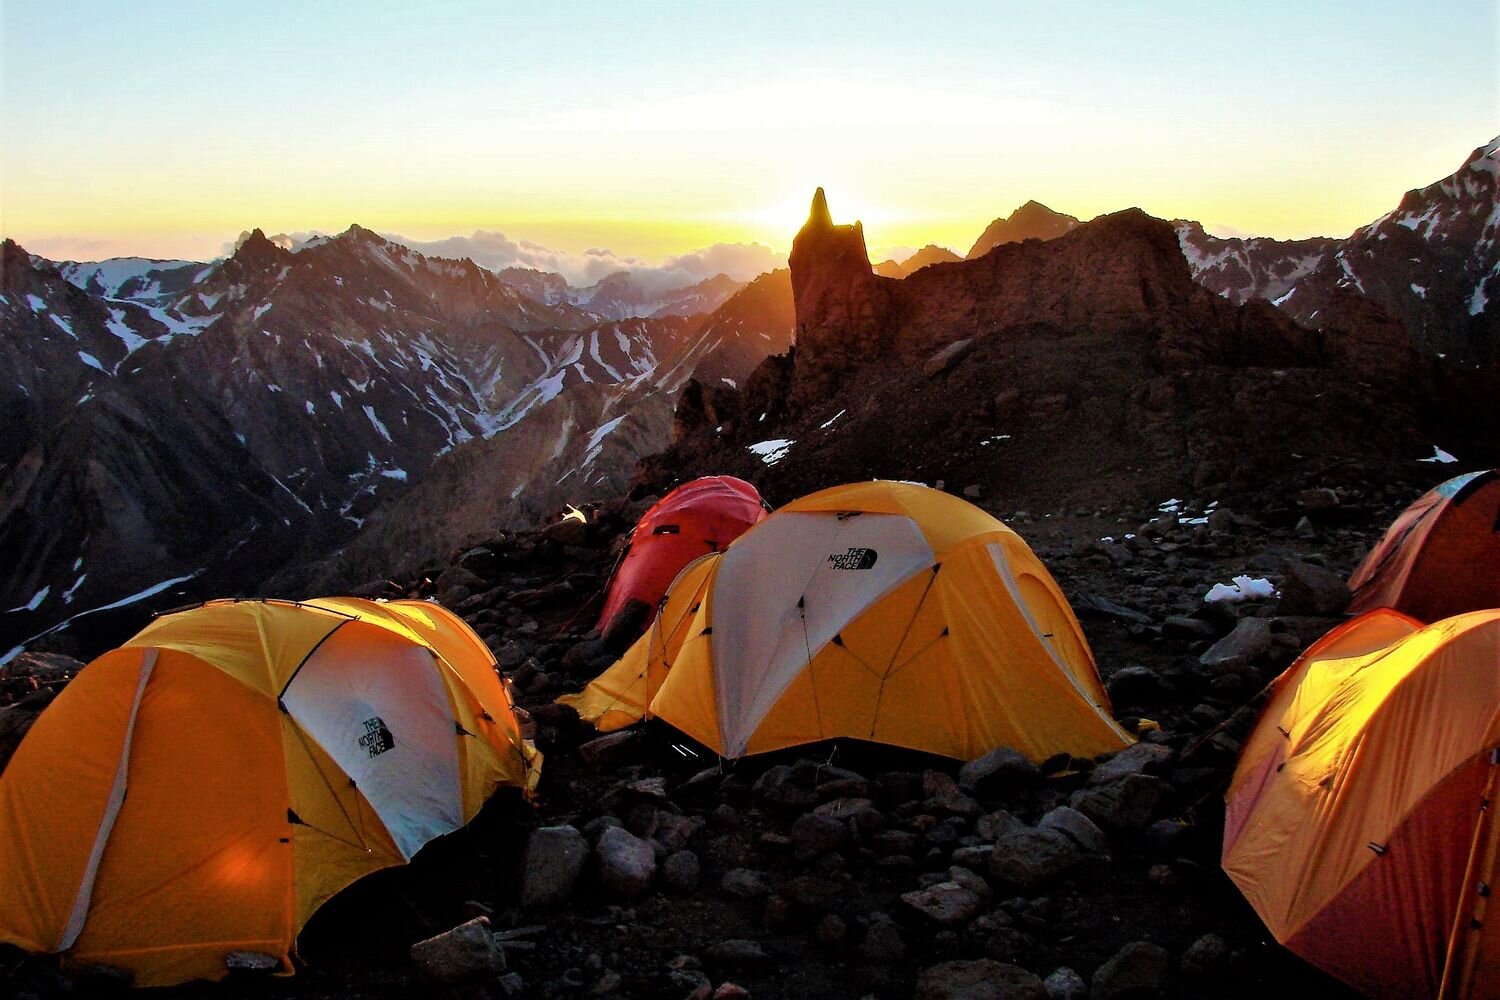 Chile Montaña Aconcagua High Camp